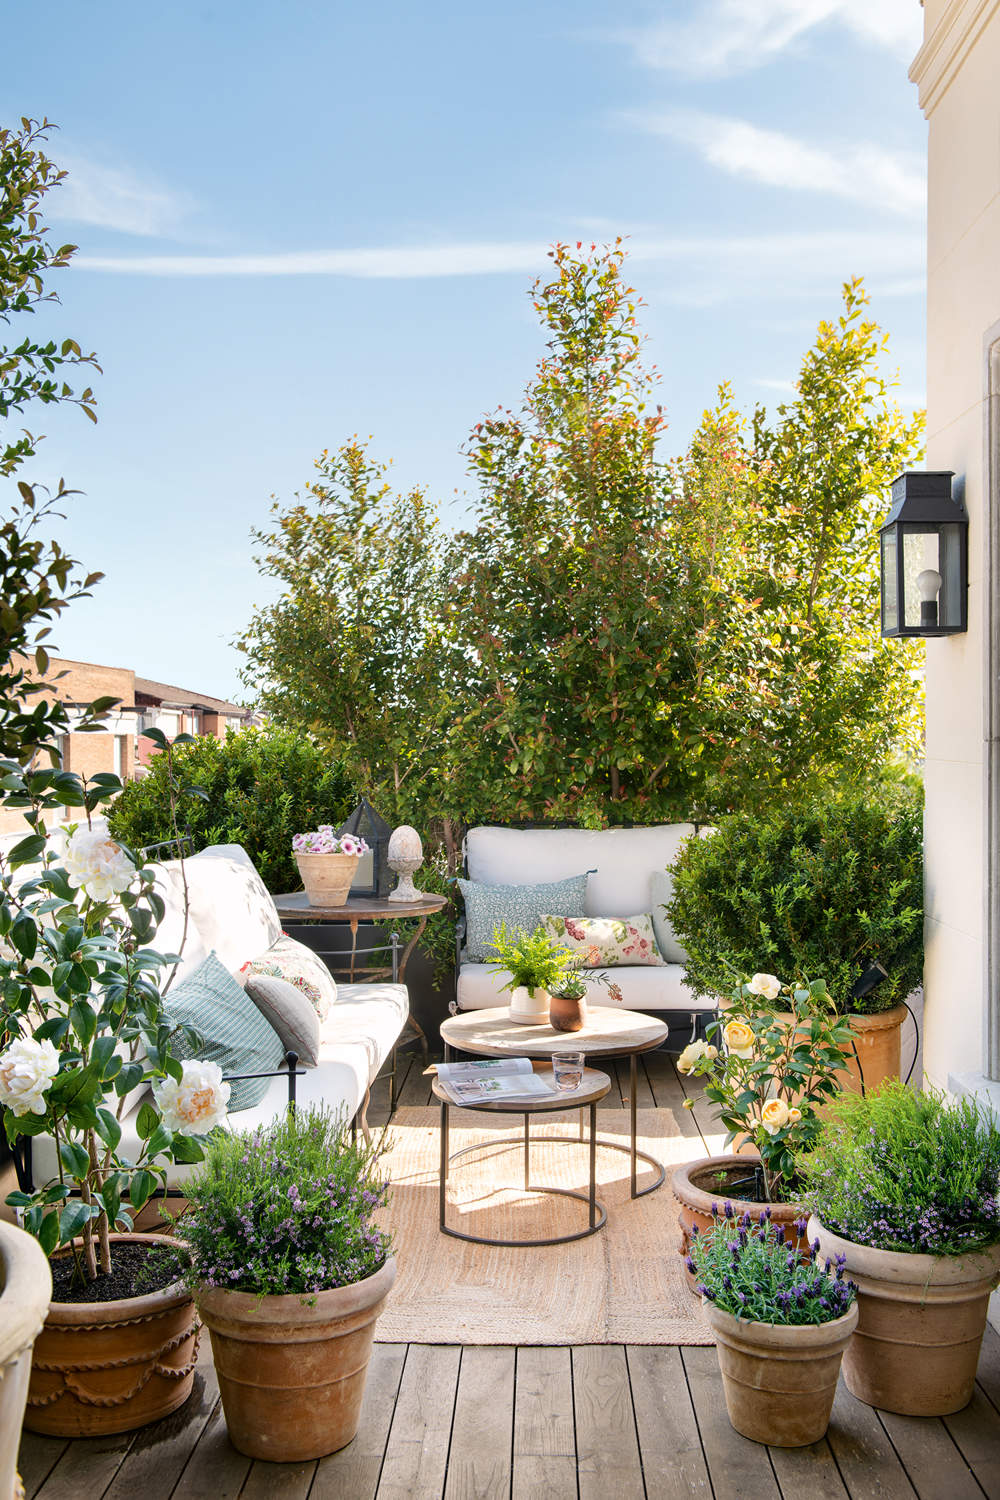 Terraza rústica con sofás de hierro y blancos con macetas con arbustos y plantas aromáticas